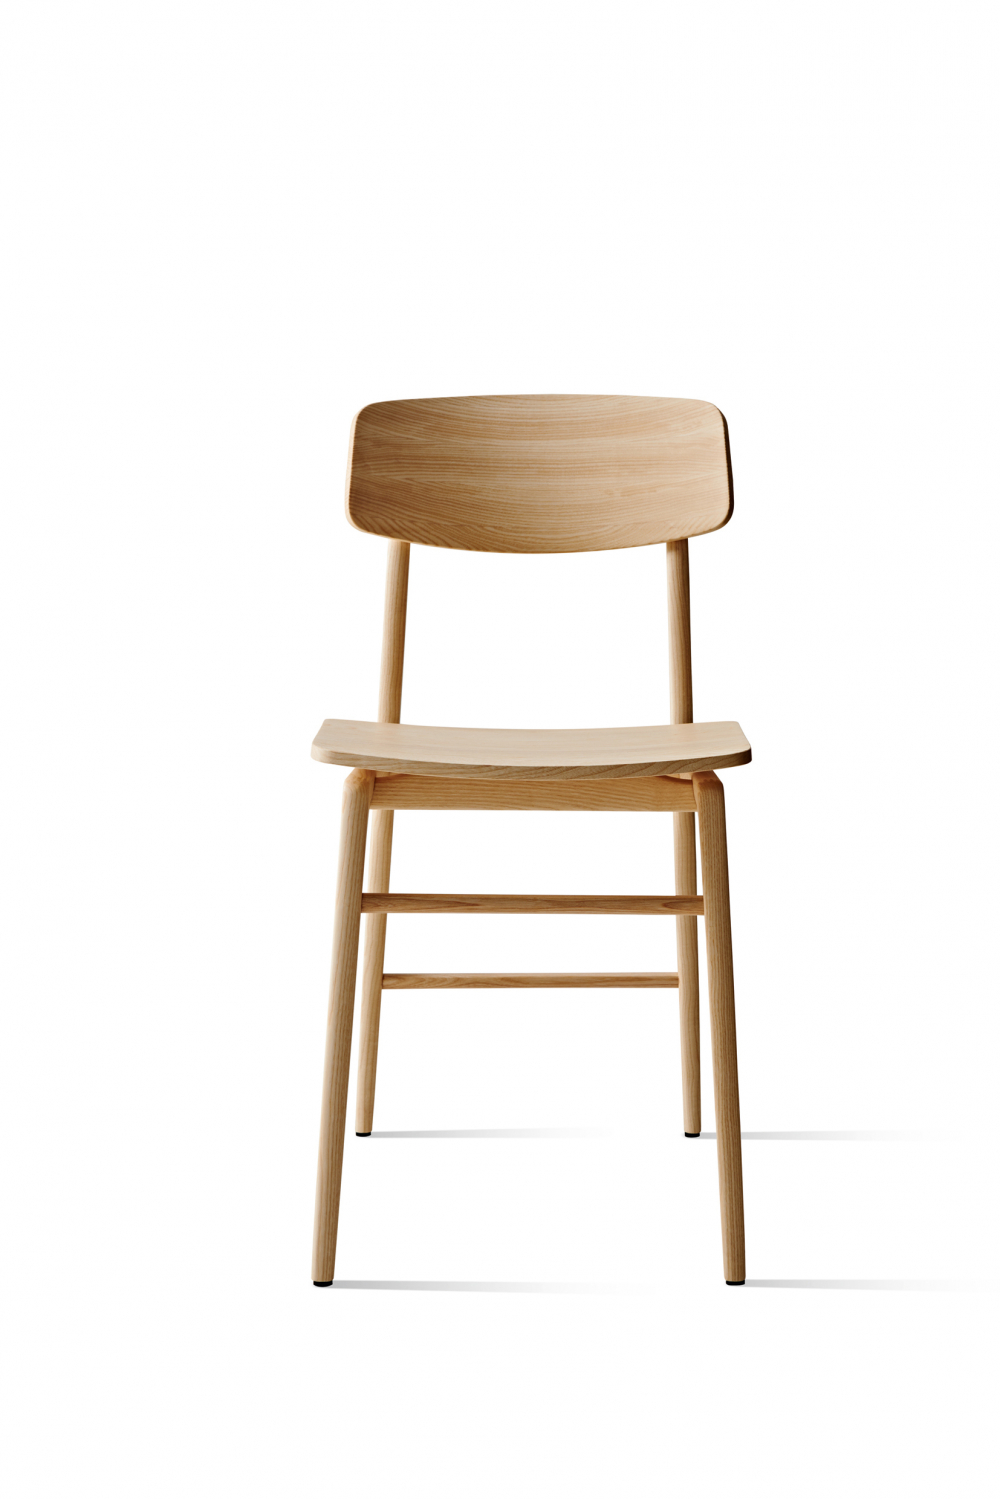 Woody chair by Francesco Meda 